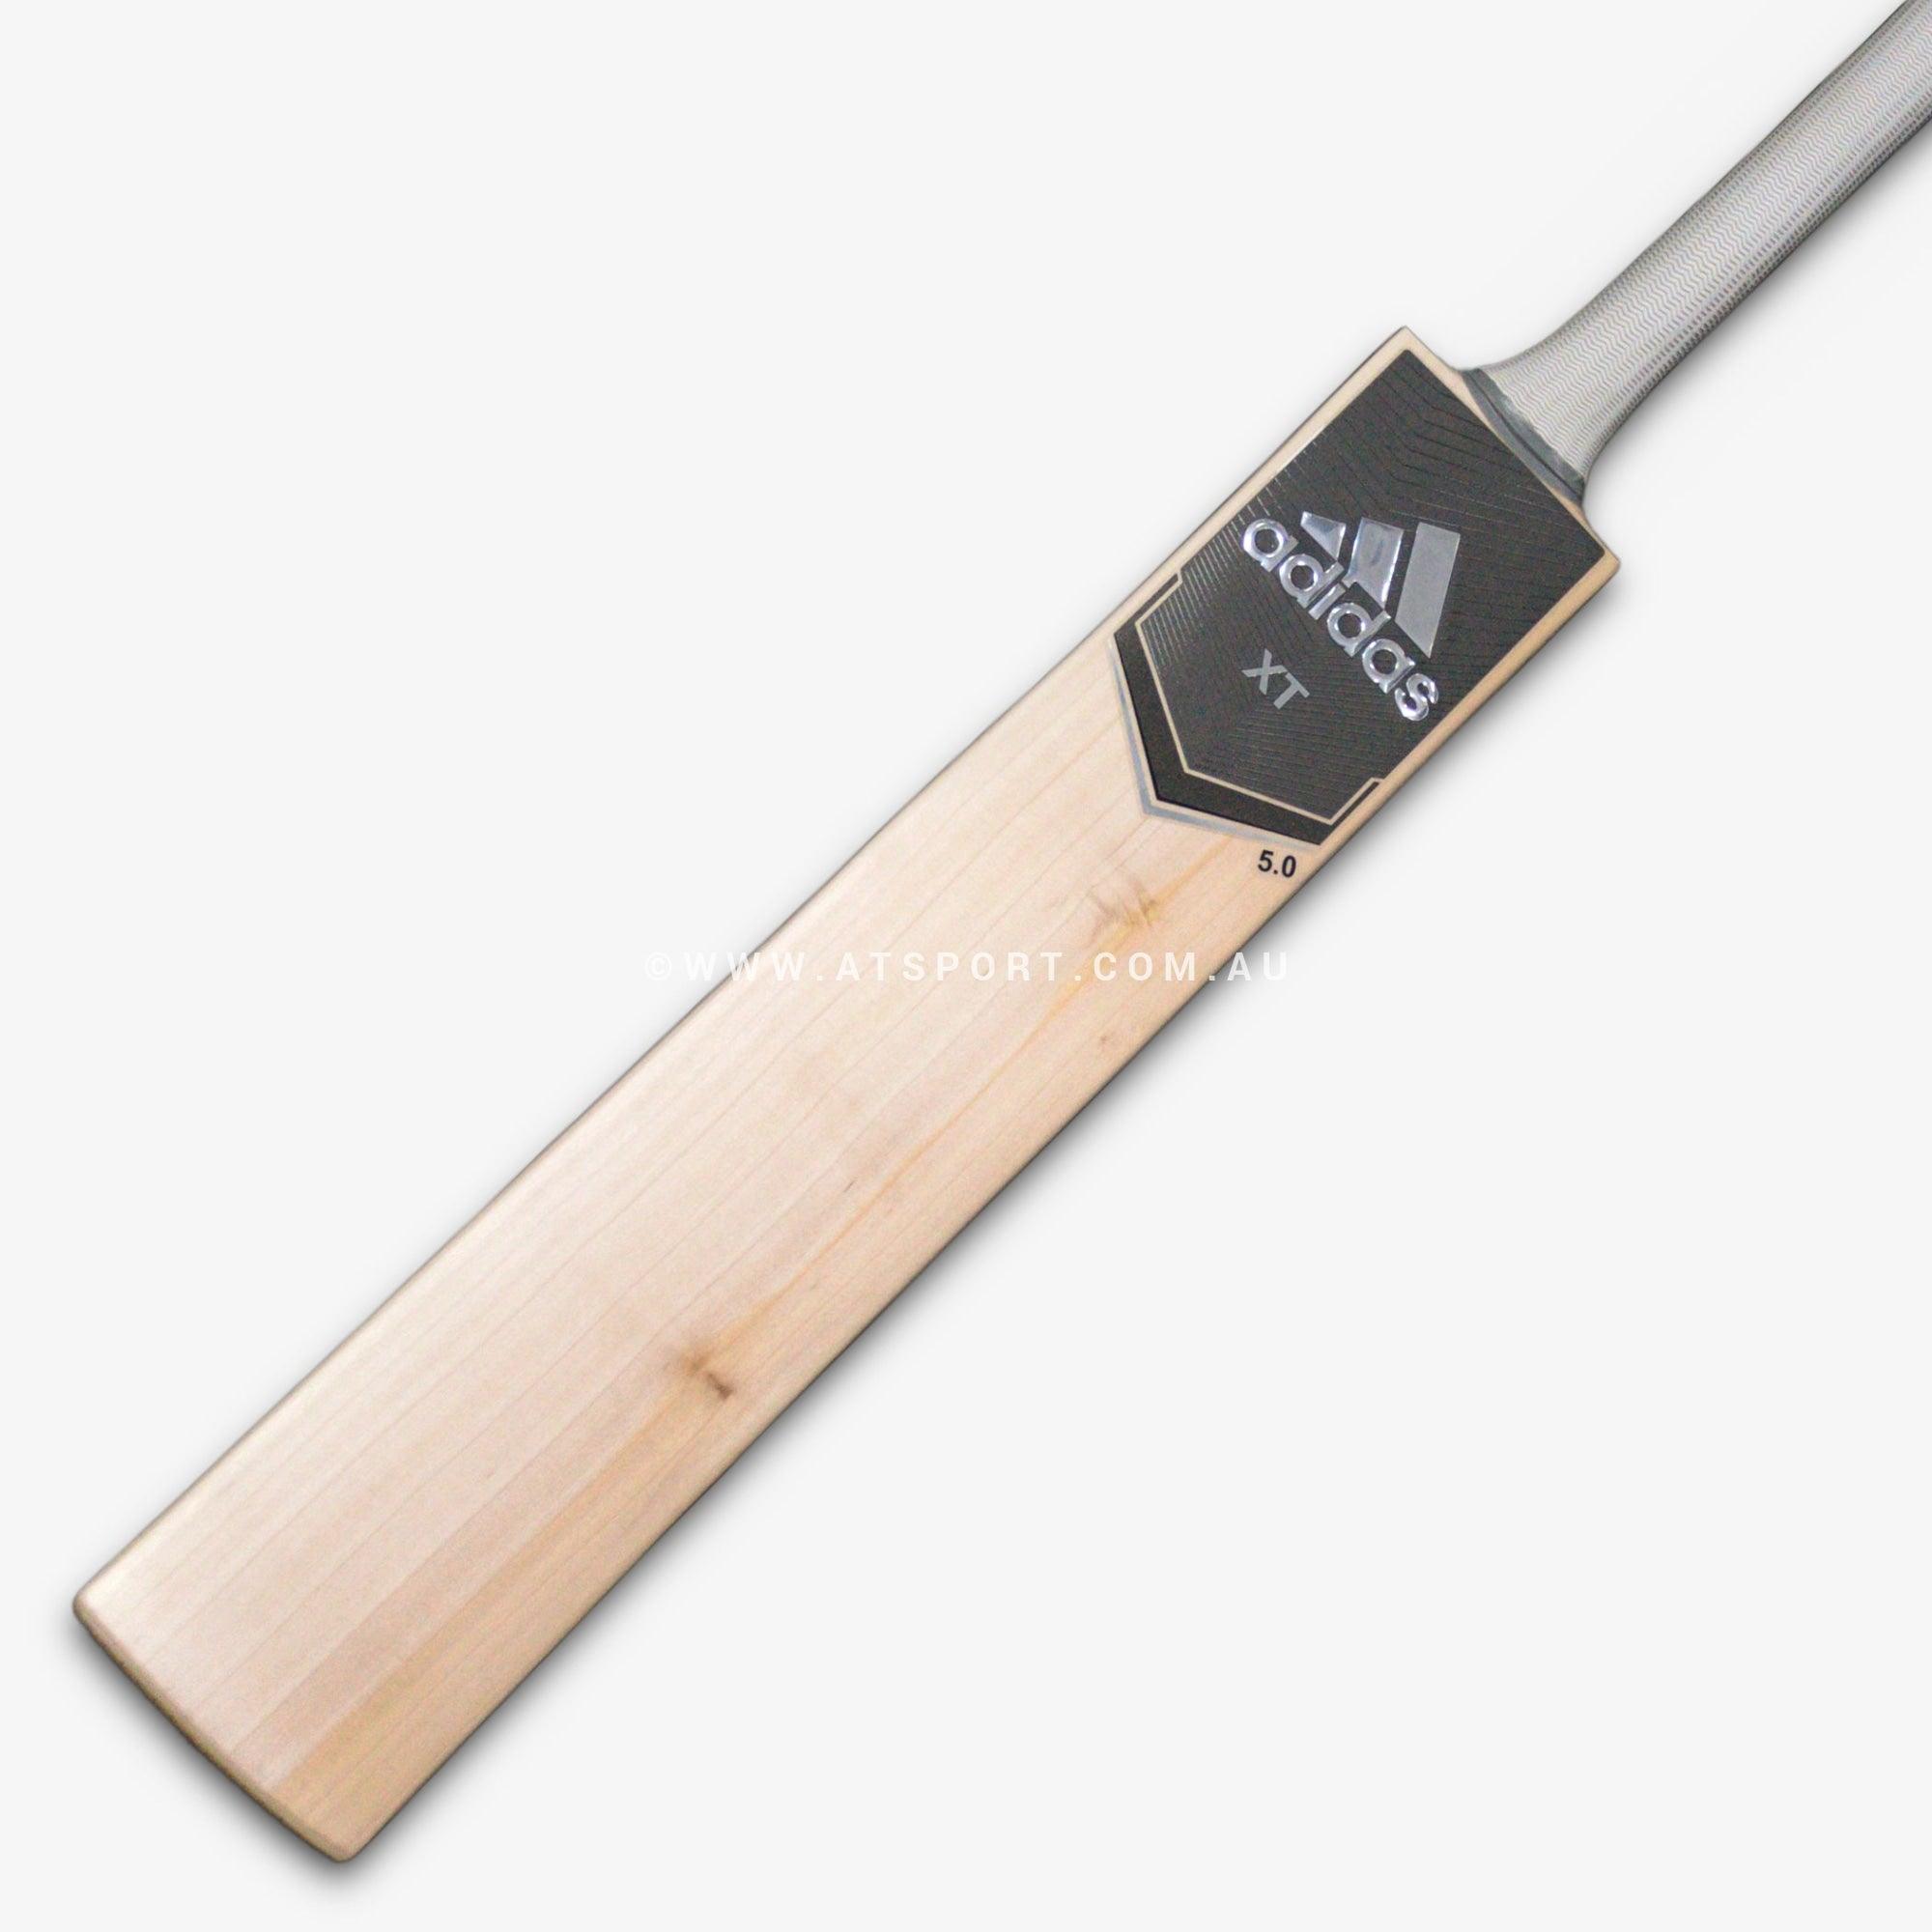 Adidas XT Grey 5.0 English Willow Cricket Bat - JUNIOR - AT Sports